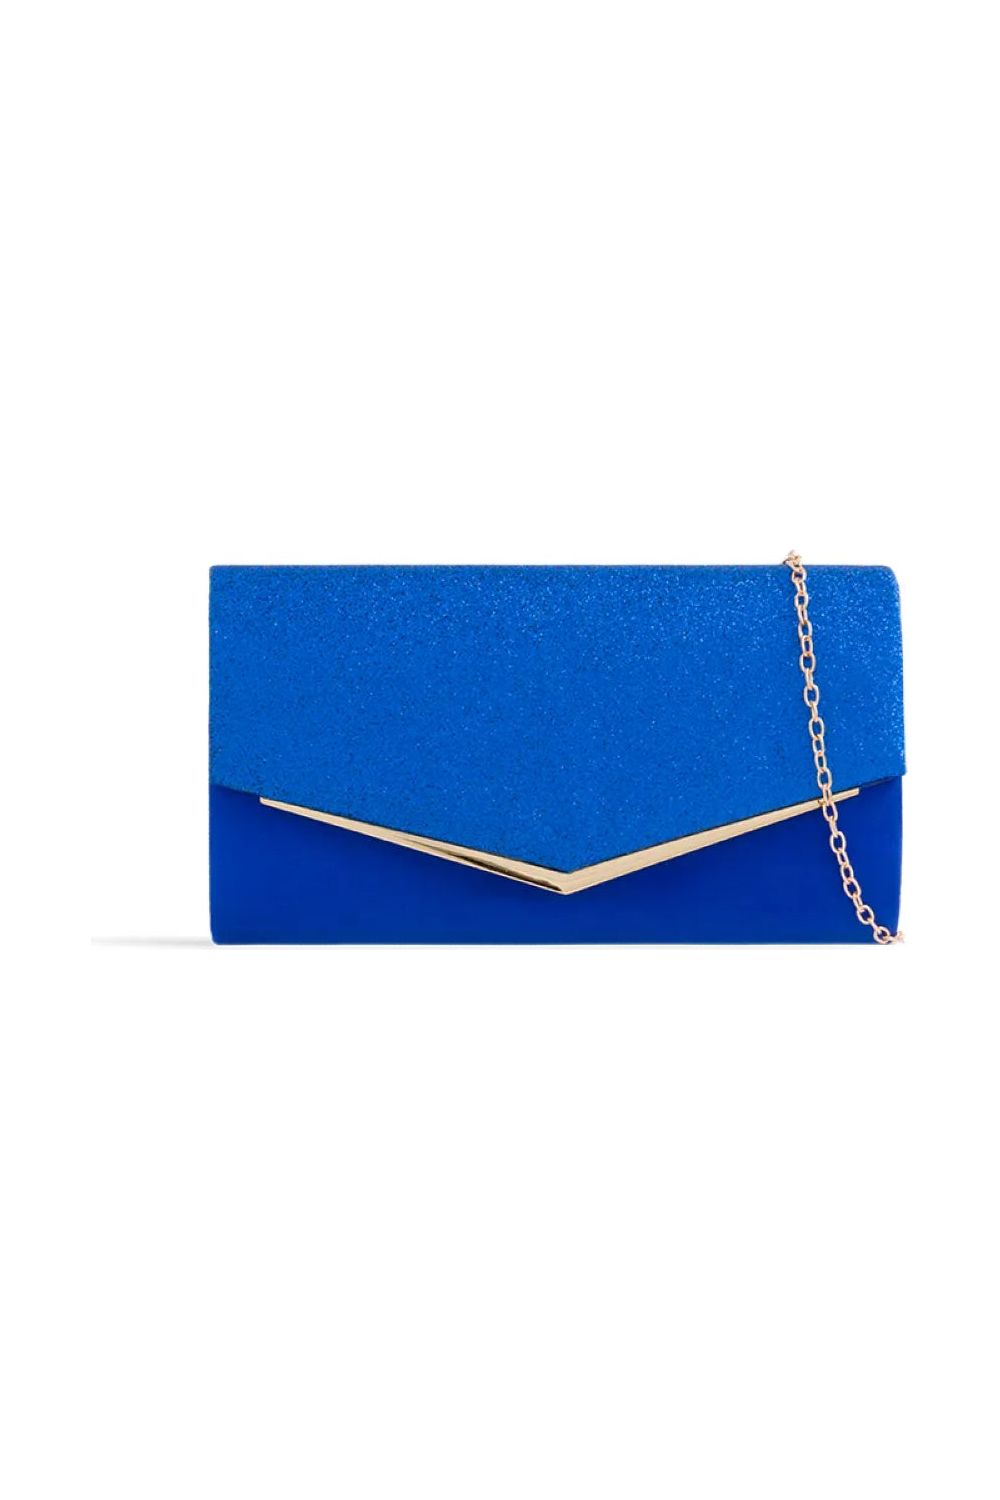 Royal Blue Glitter Envelope Clutch Bag ALH2348